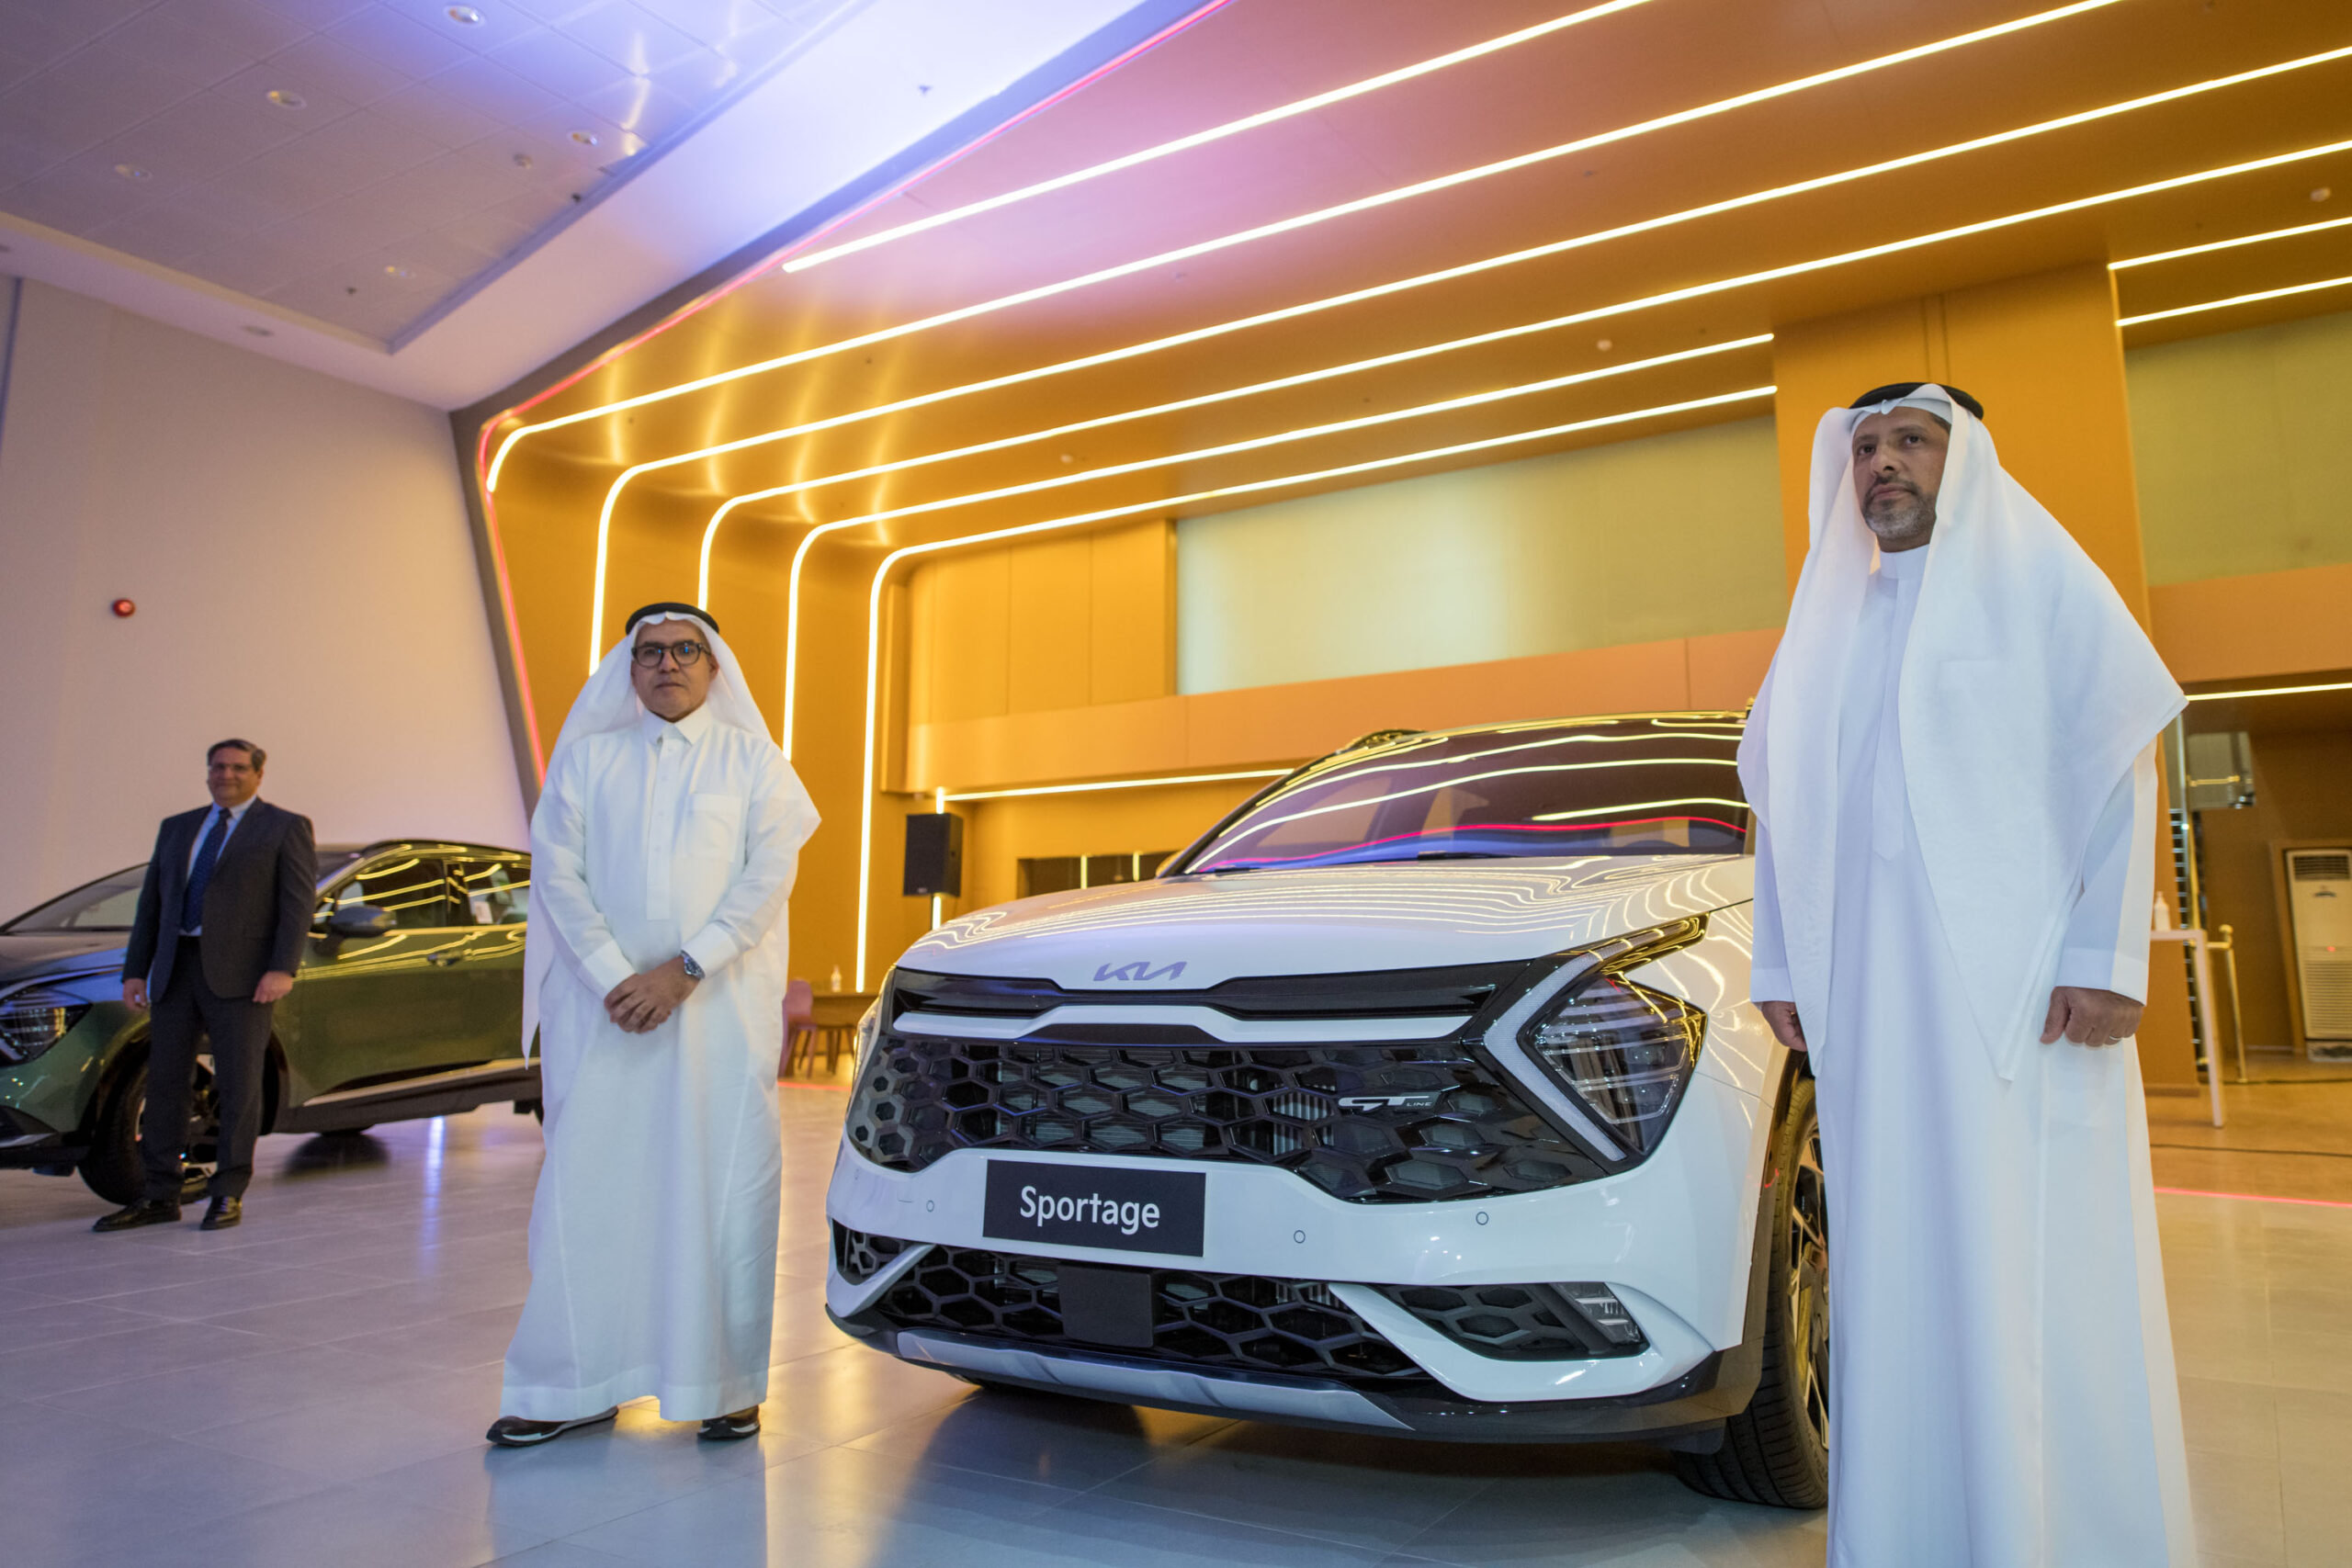 "كيا الجبر" تدشن الجيل الخامس من سيارة سبورتج في الرياض في حفل احتضنه معرضها في البديعة وسط حضور كبير 1